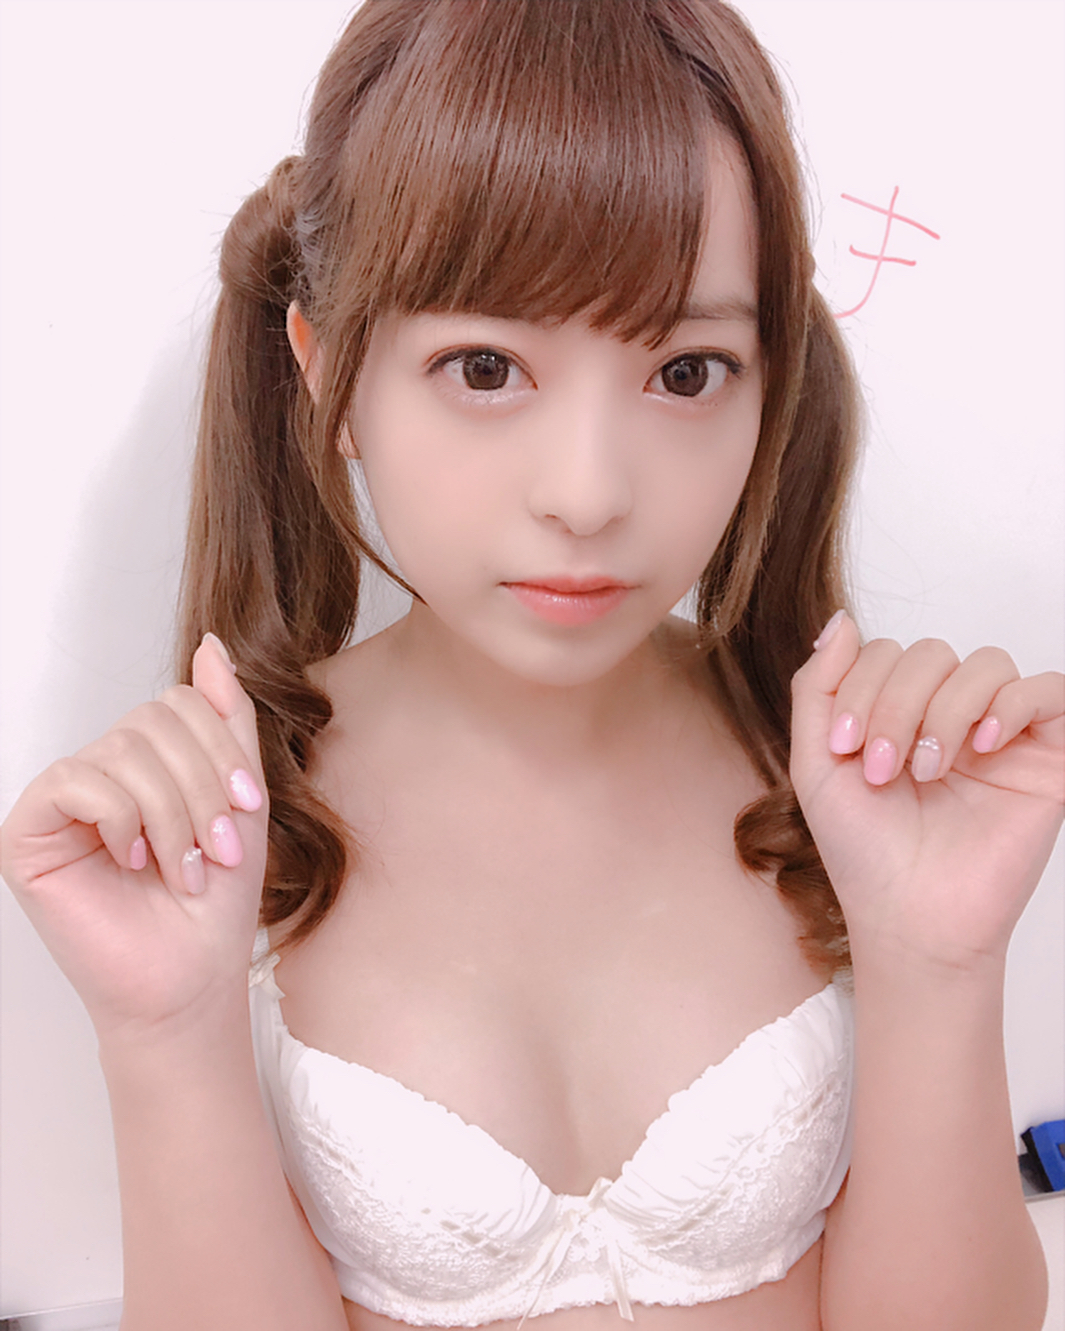 Moko Chan Sakura in White Bra Top Perky Breasts